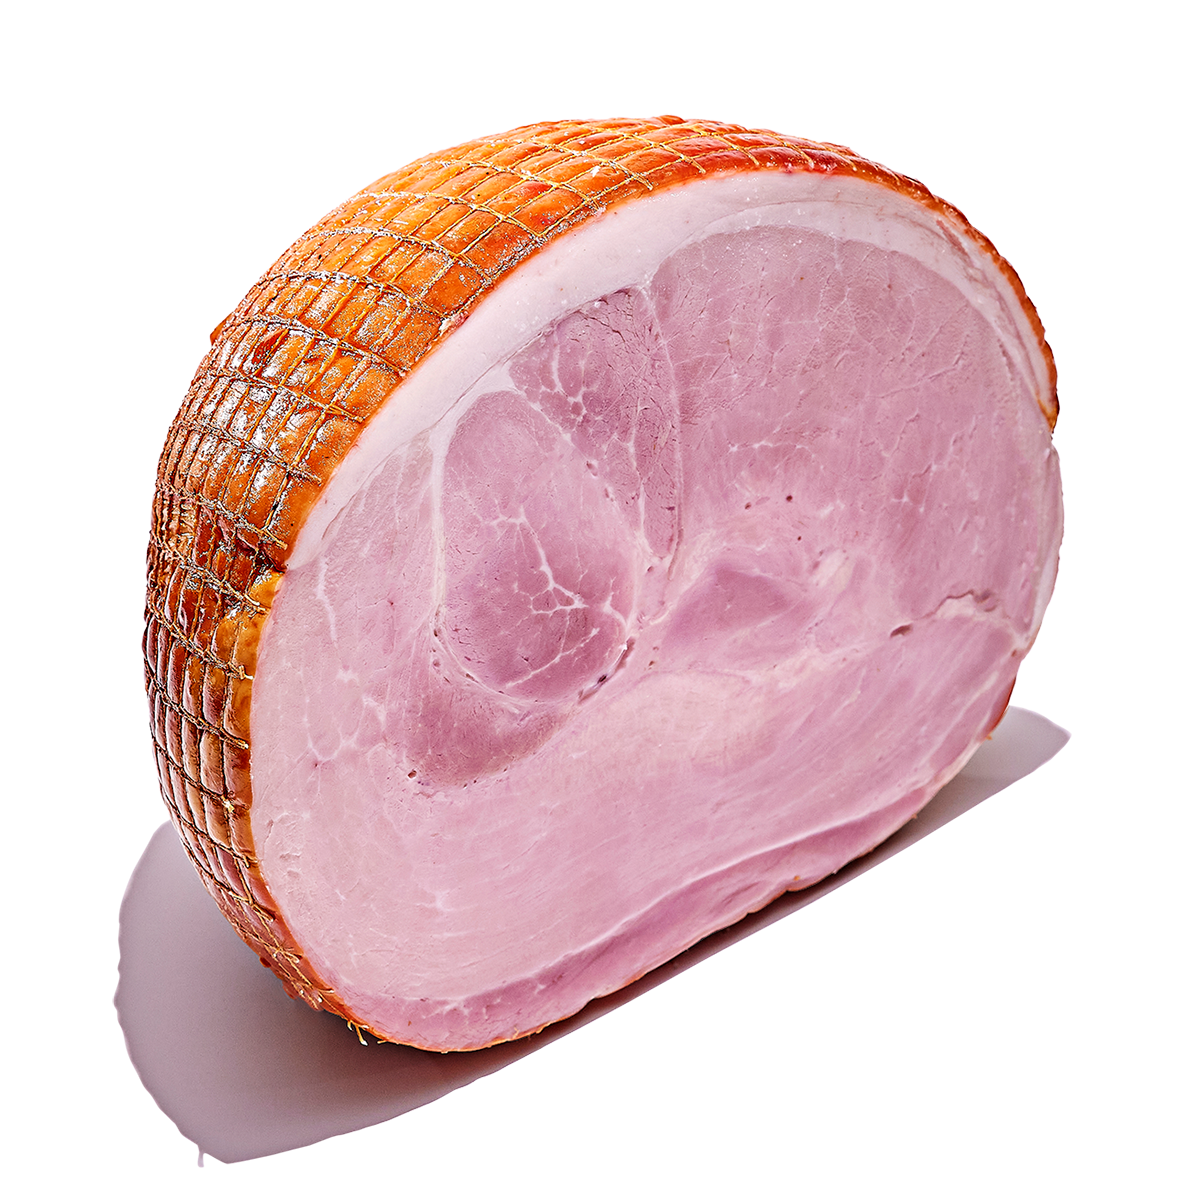 Andrews Ham, Best Ham, Melbournes Best Ham, Made with Meraki, Boneless Ham, Austrian Ham